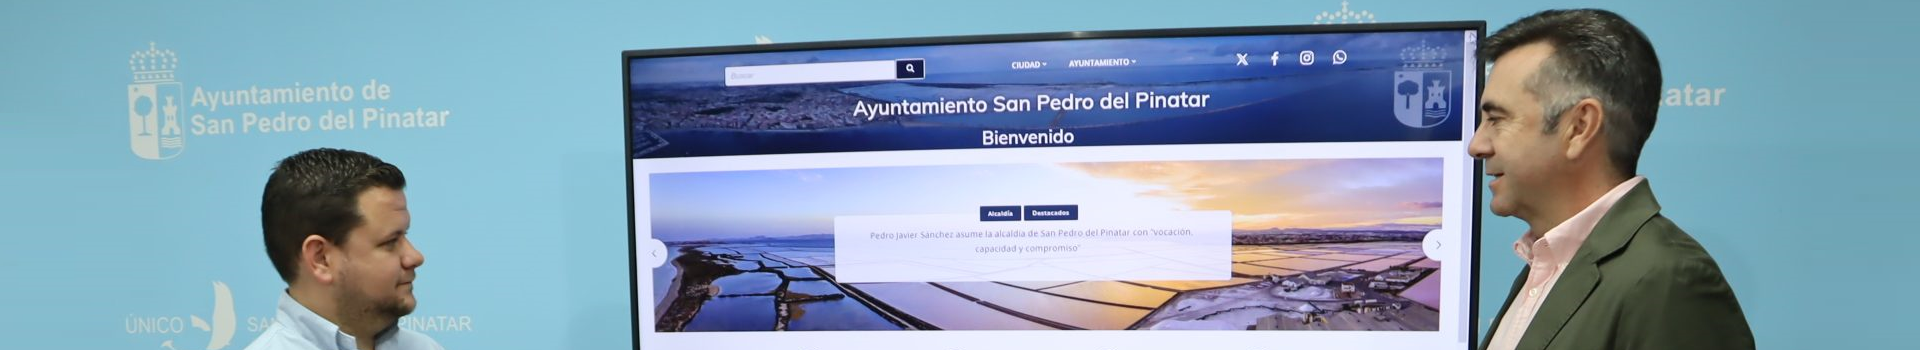 San Pedro del Pinatar presenta su nuevo portal web más intuitivo, claro y simplificado